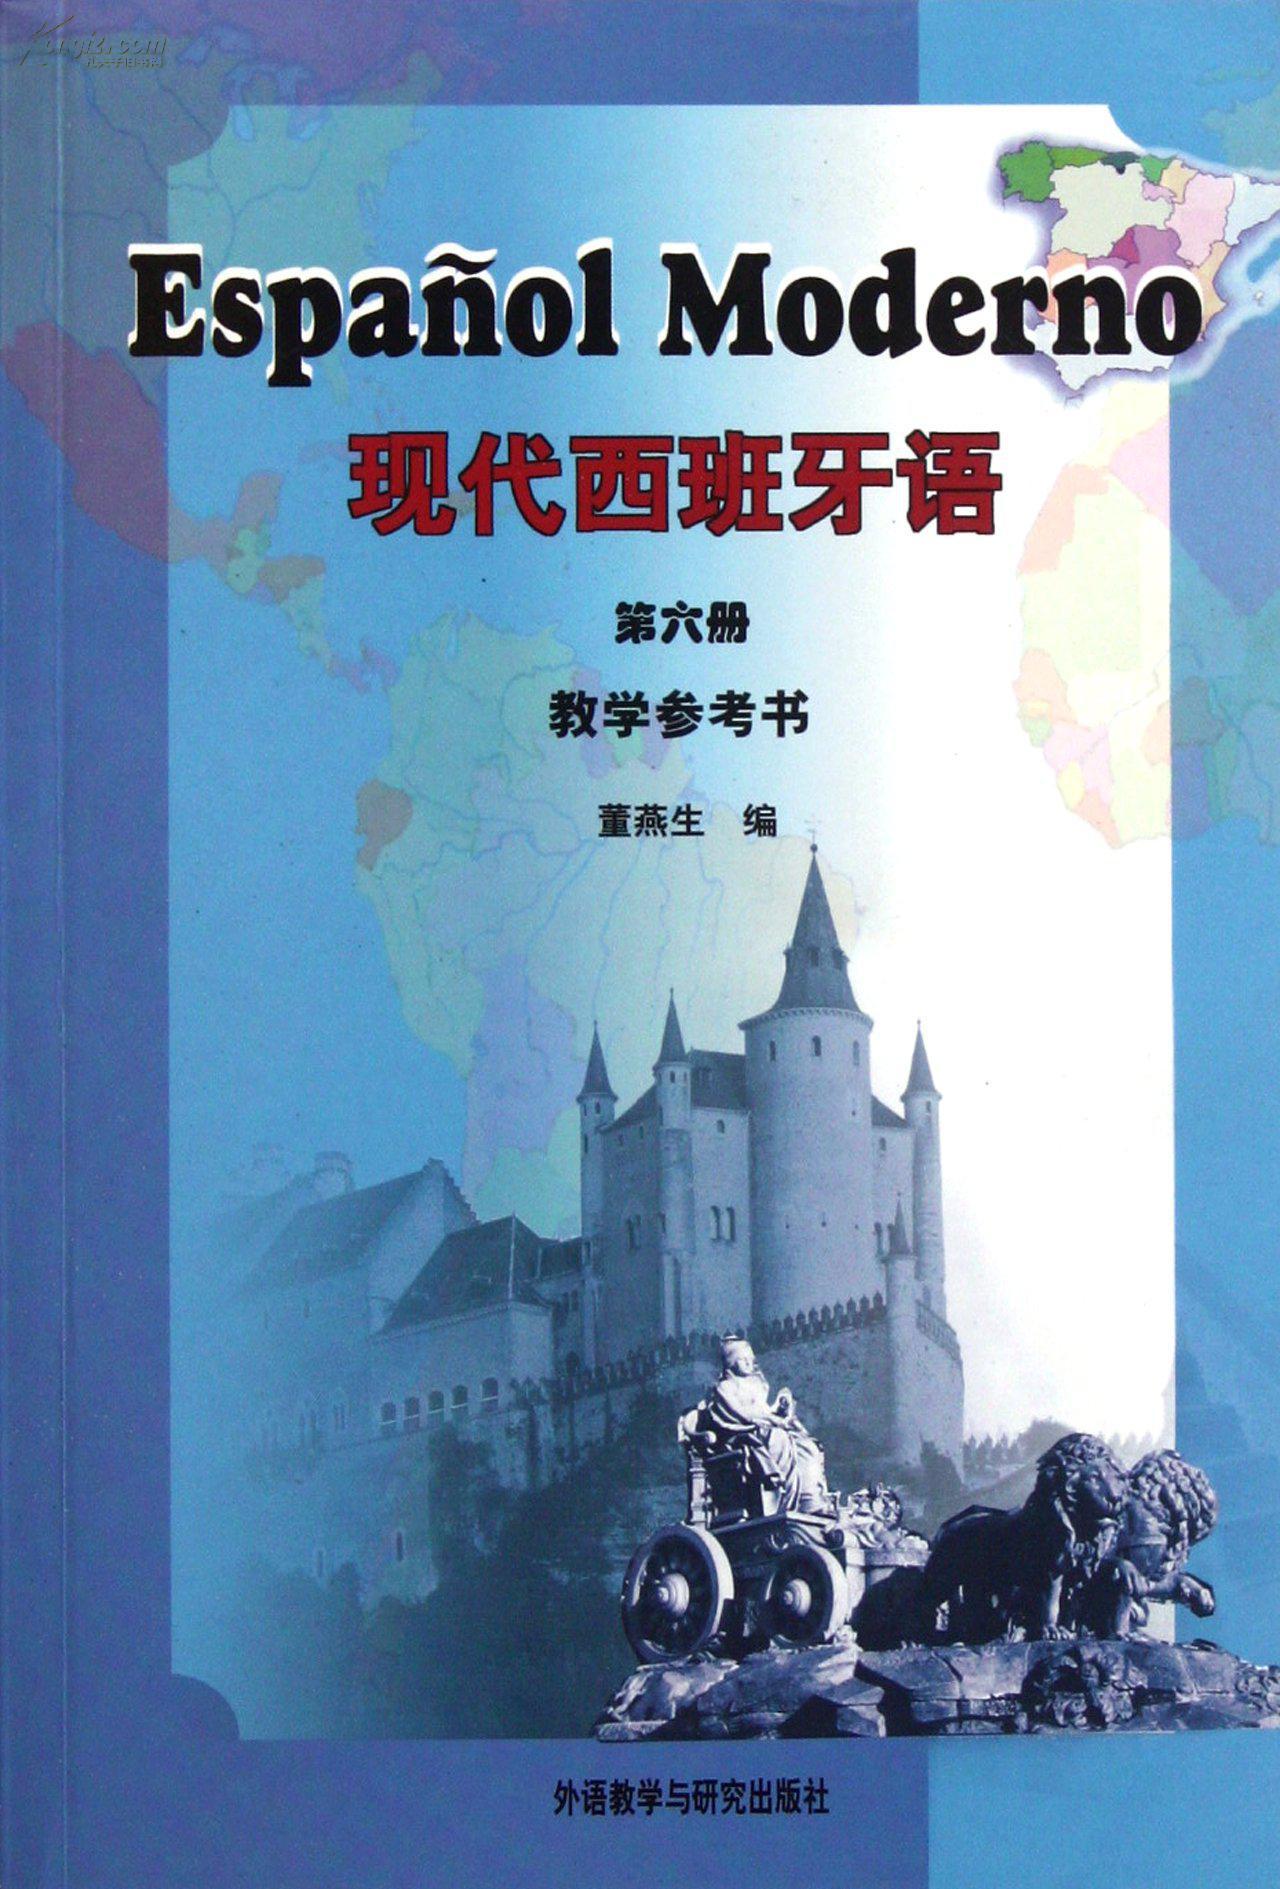 《現代西班牙語》第一冊封面